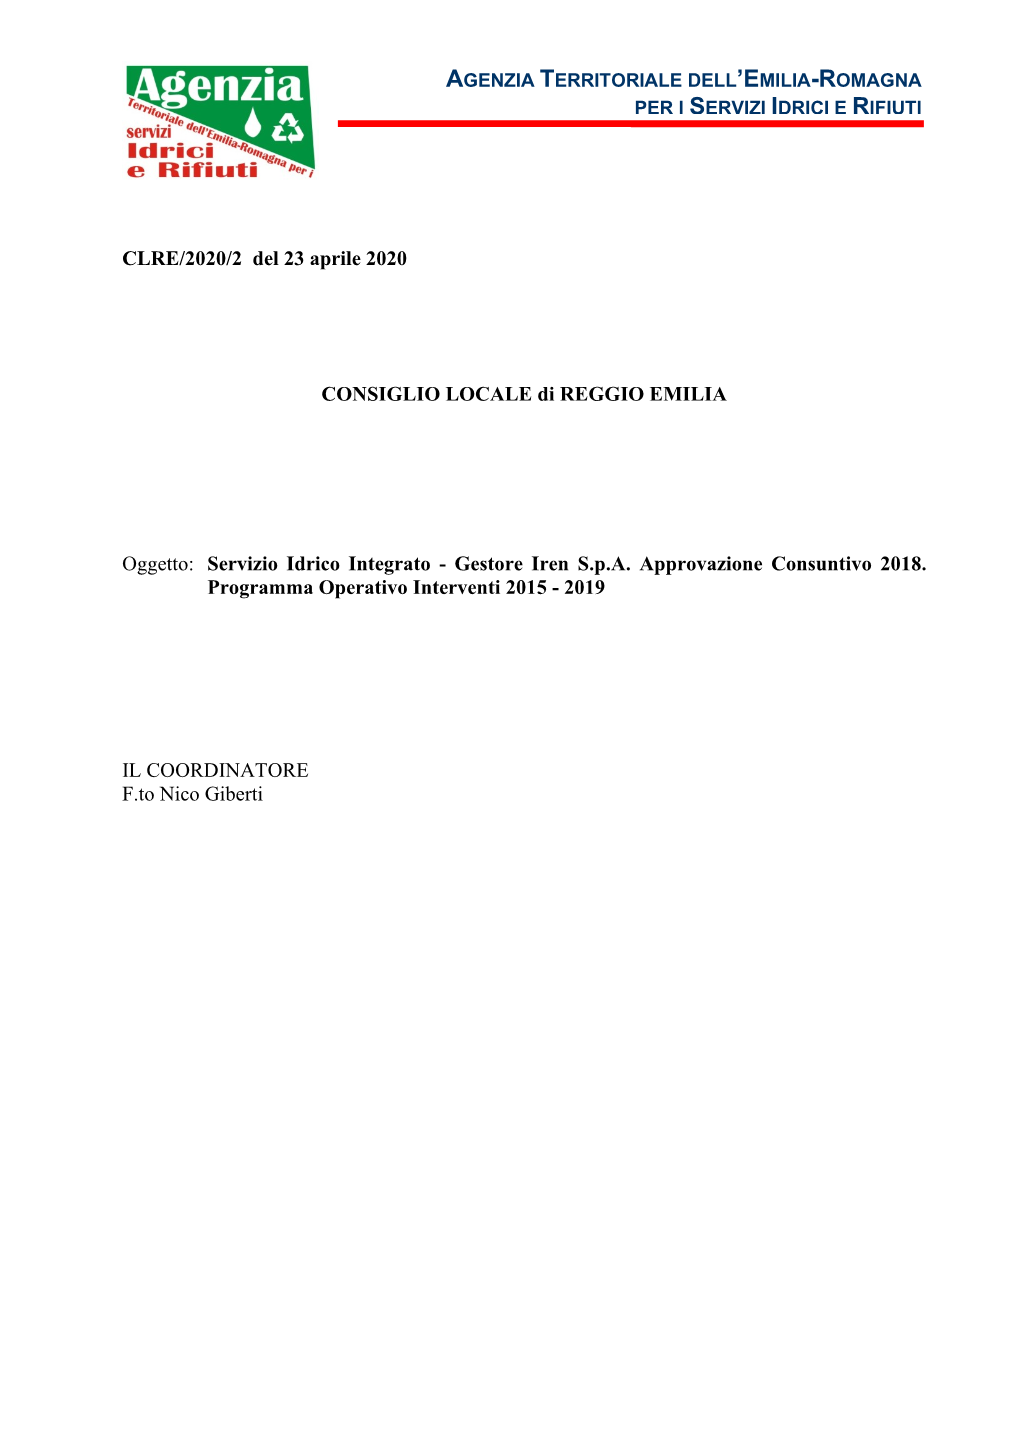 Deliberazione Del Consiglio Locale Di Reggio Emilia N.2 Del 23 Aprile 2020